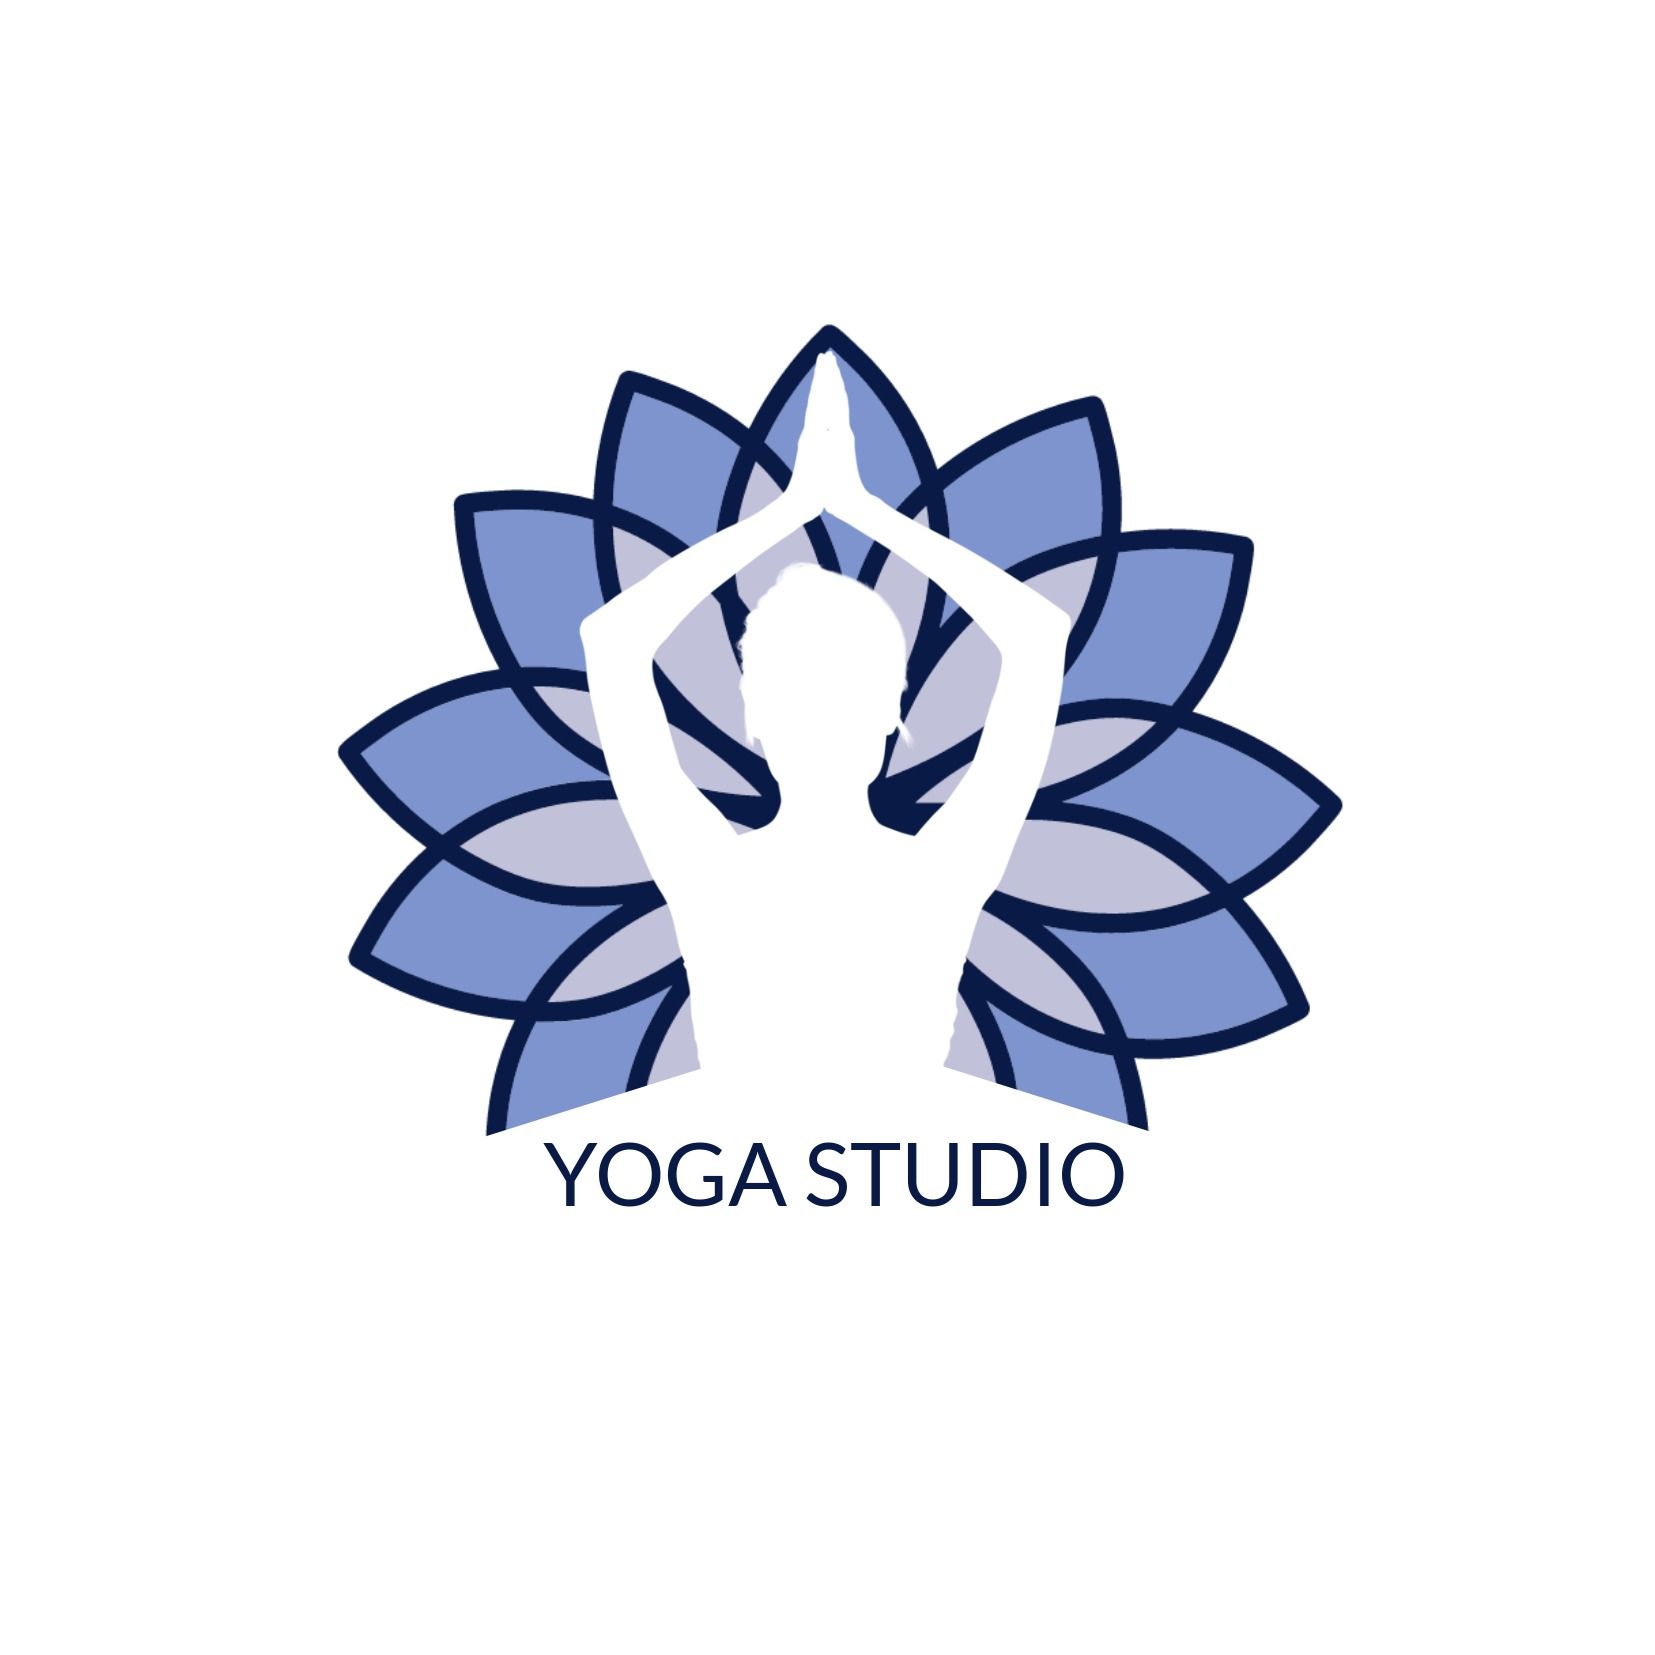 Conceptions de logos créatifs pour studio de yoga - Le guide définitif des conceptions de logo créatives - Image